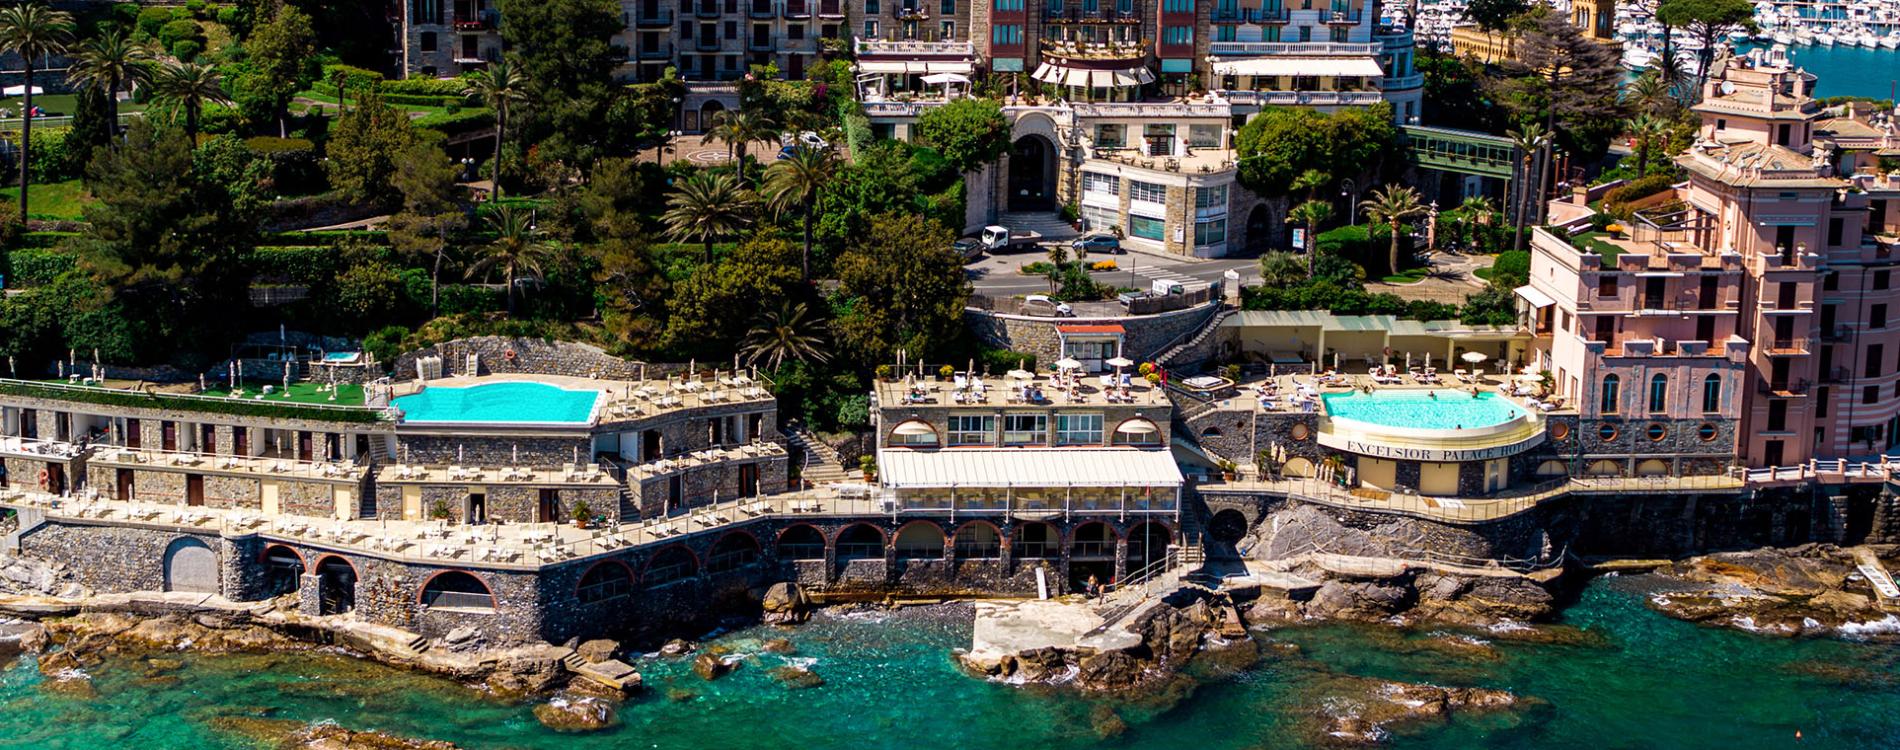 Excelsior Palace Hotel di Rapallo